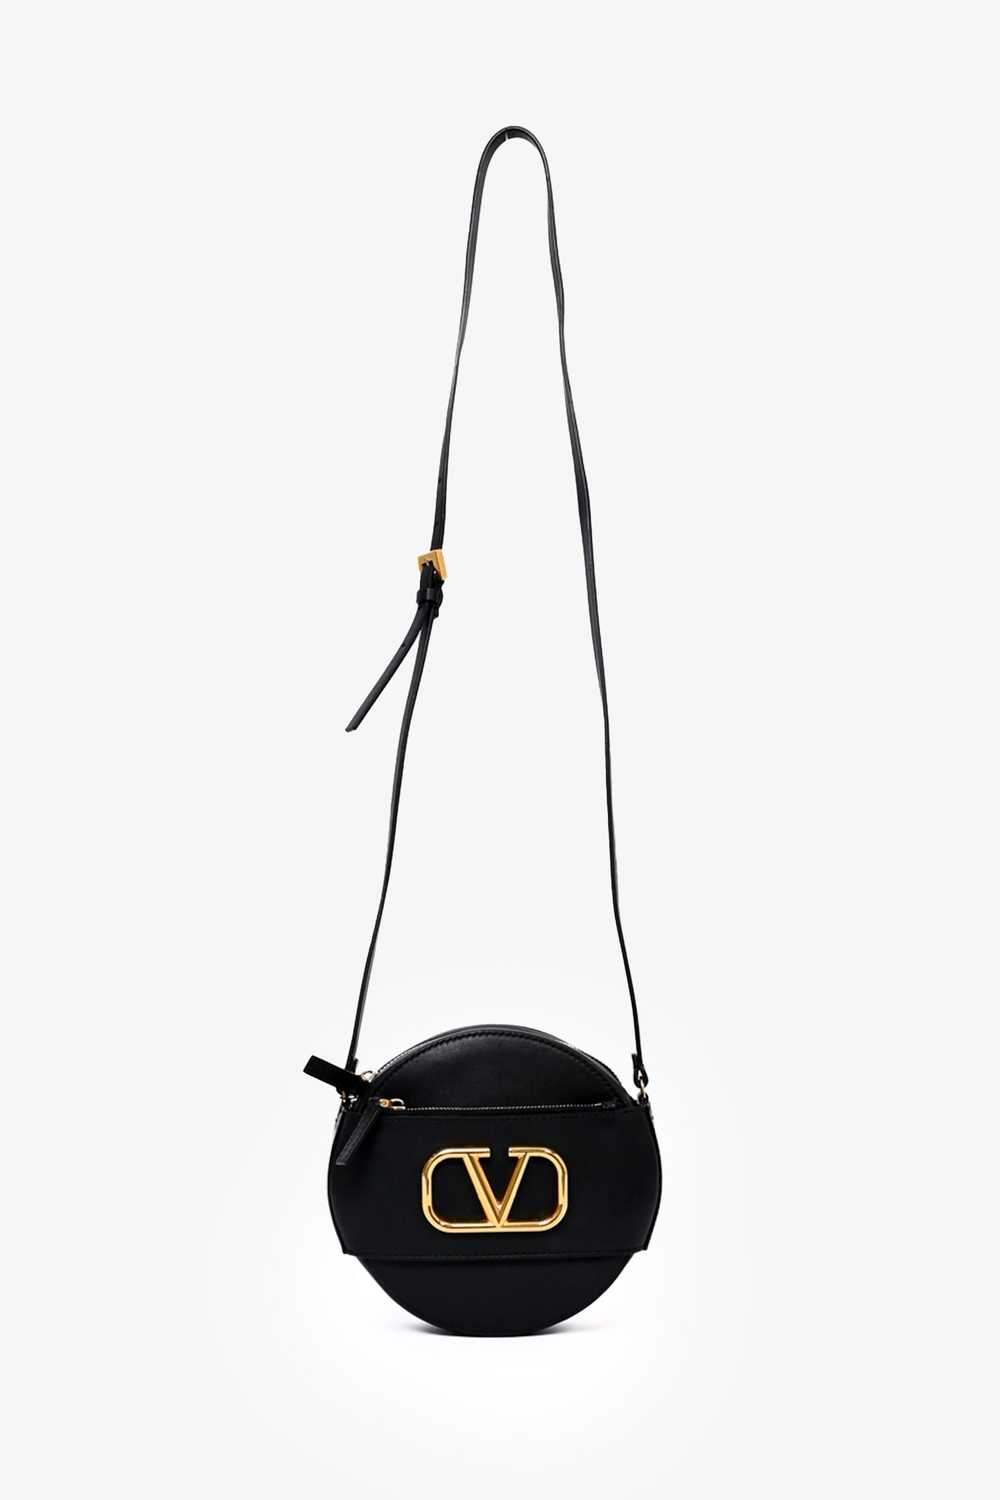 Valentino Black Leather Round V-Logo Crossbody Bag - image 11